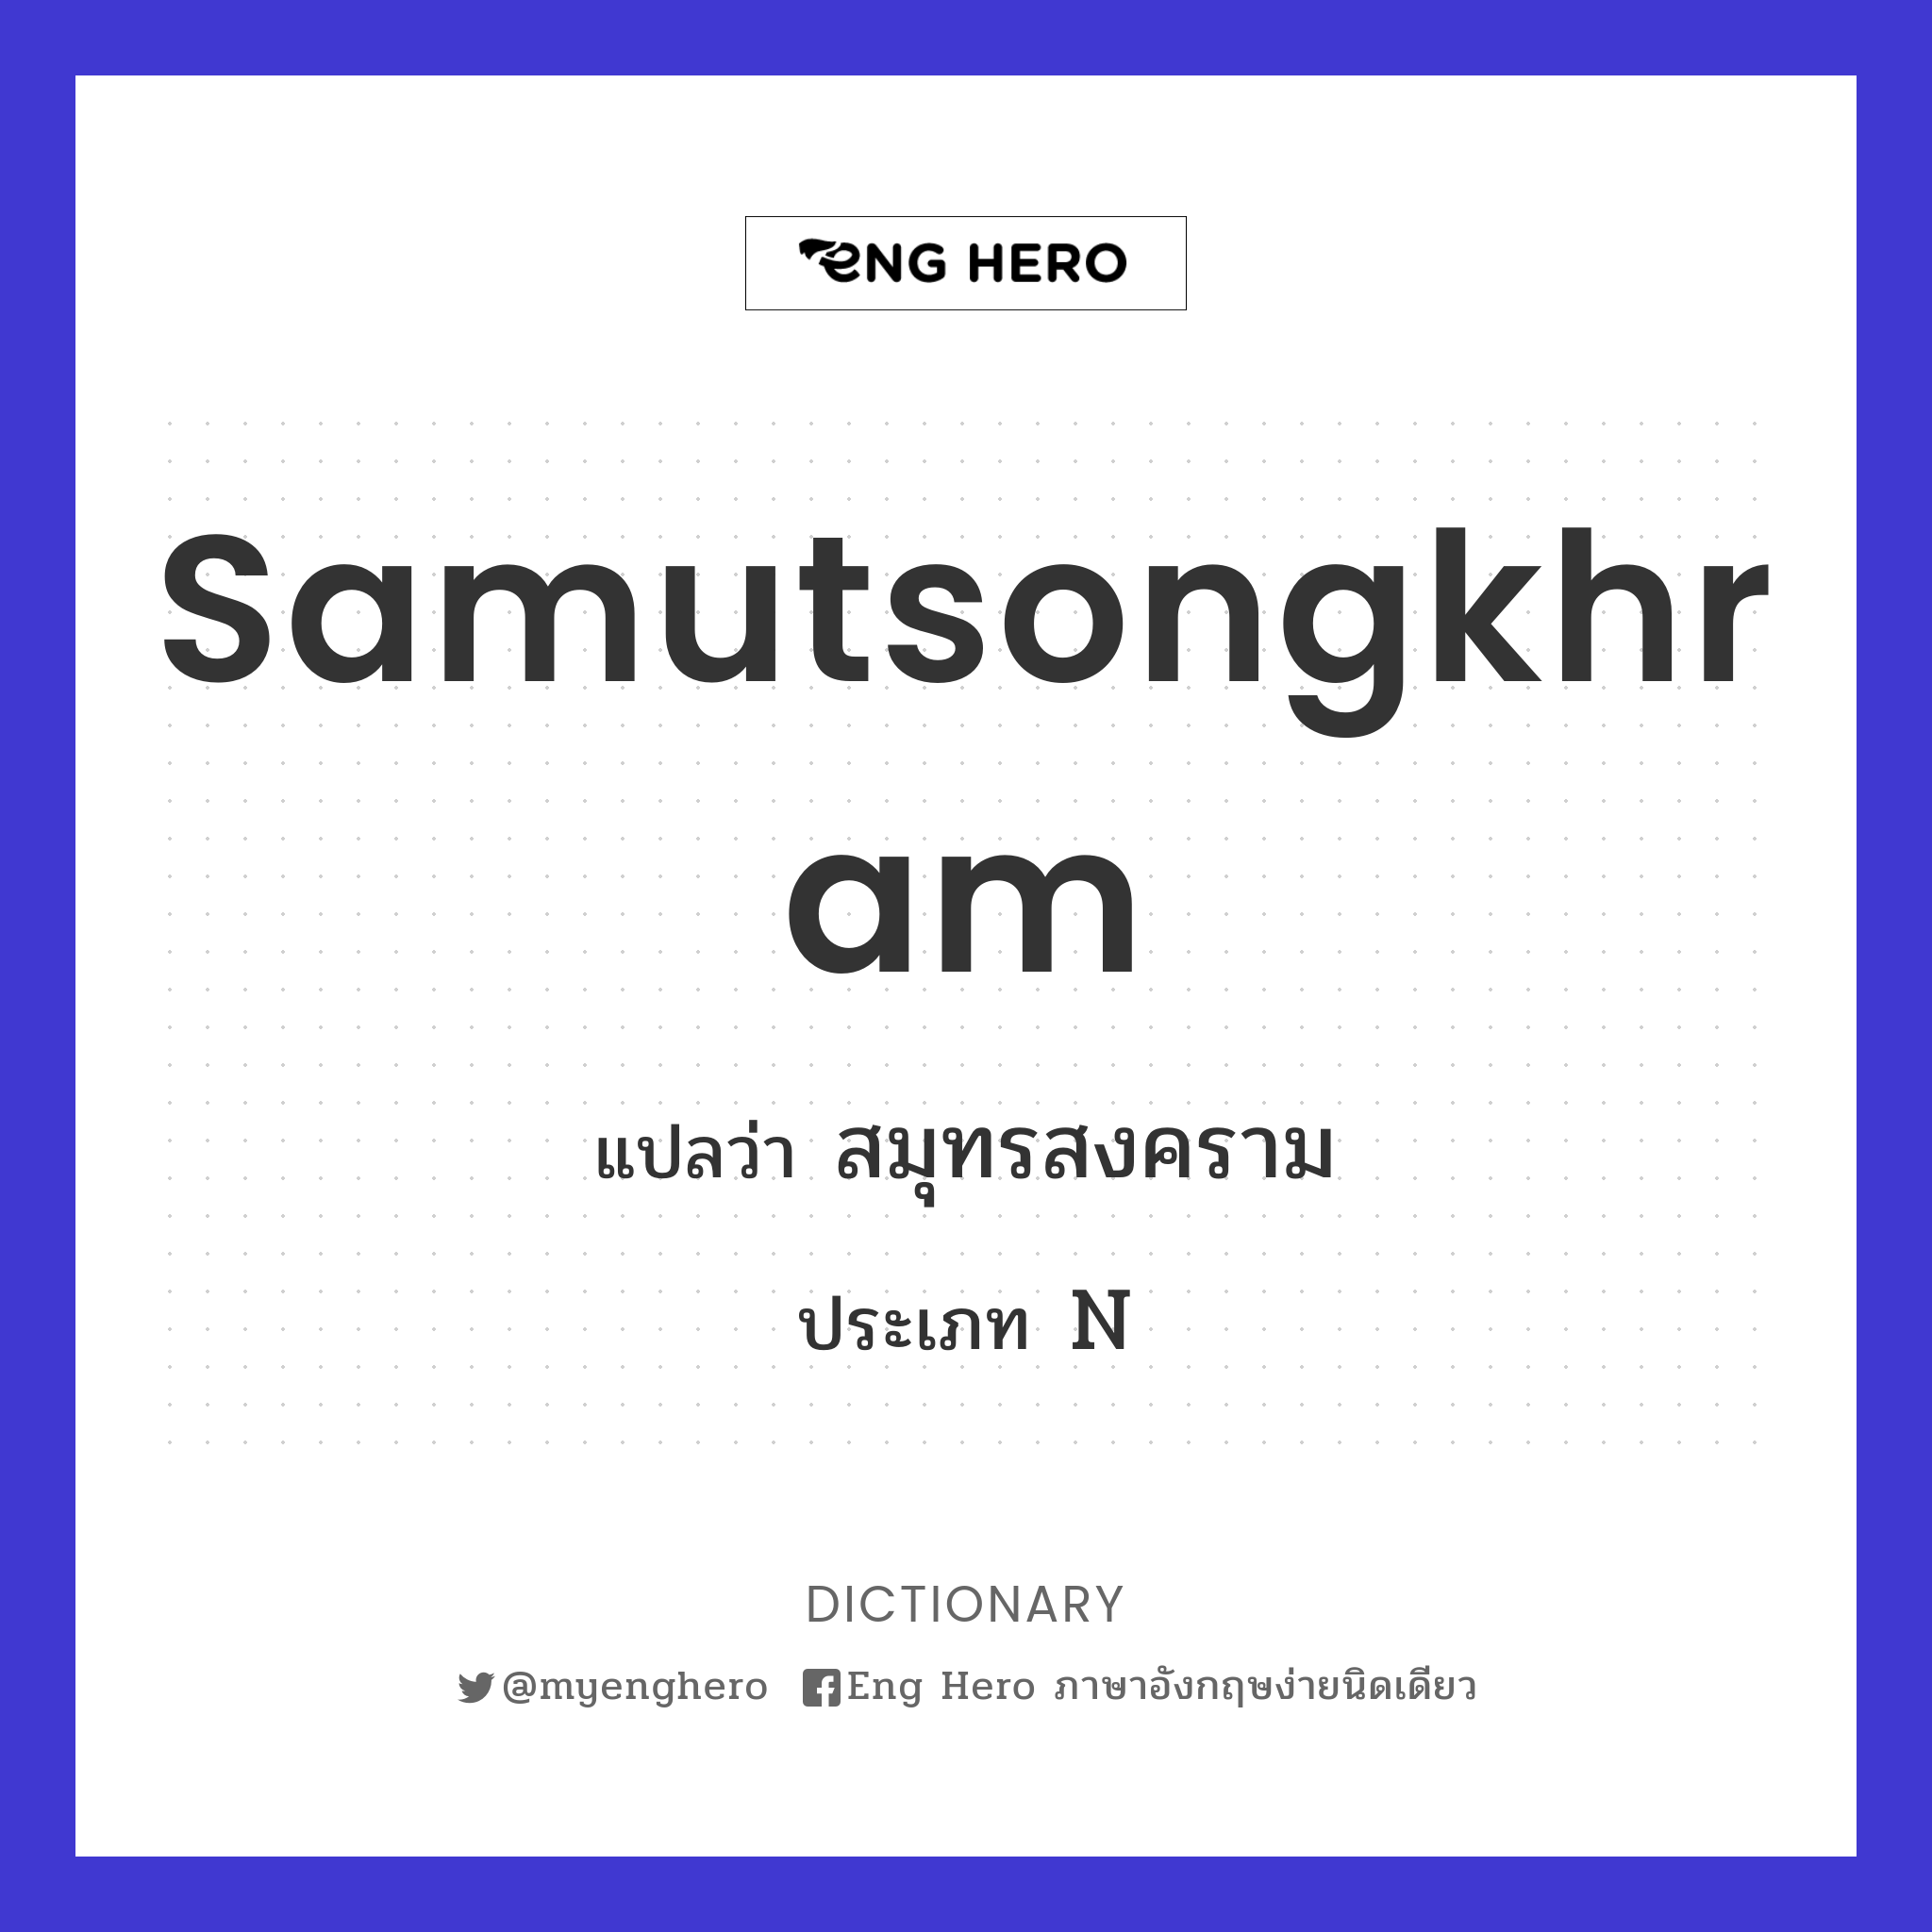 Samutsongkhram